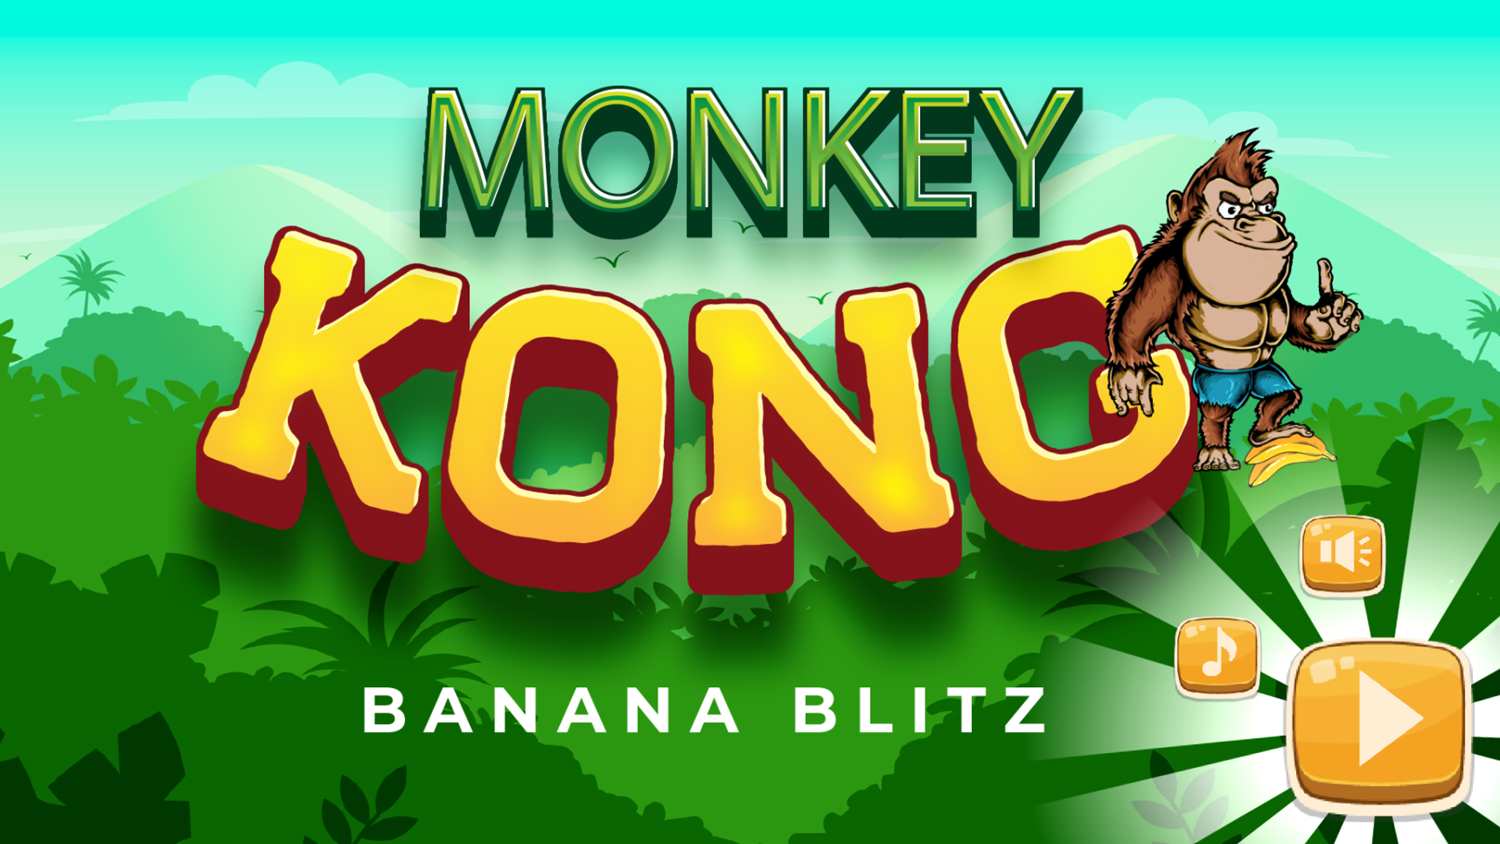 Monkey King Game Welcome Screen Screenshot.